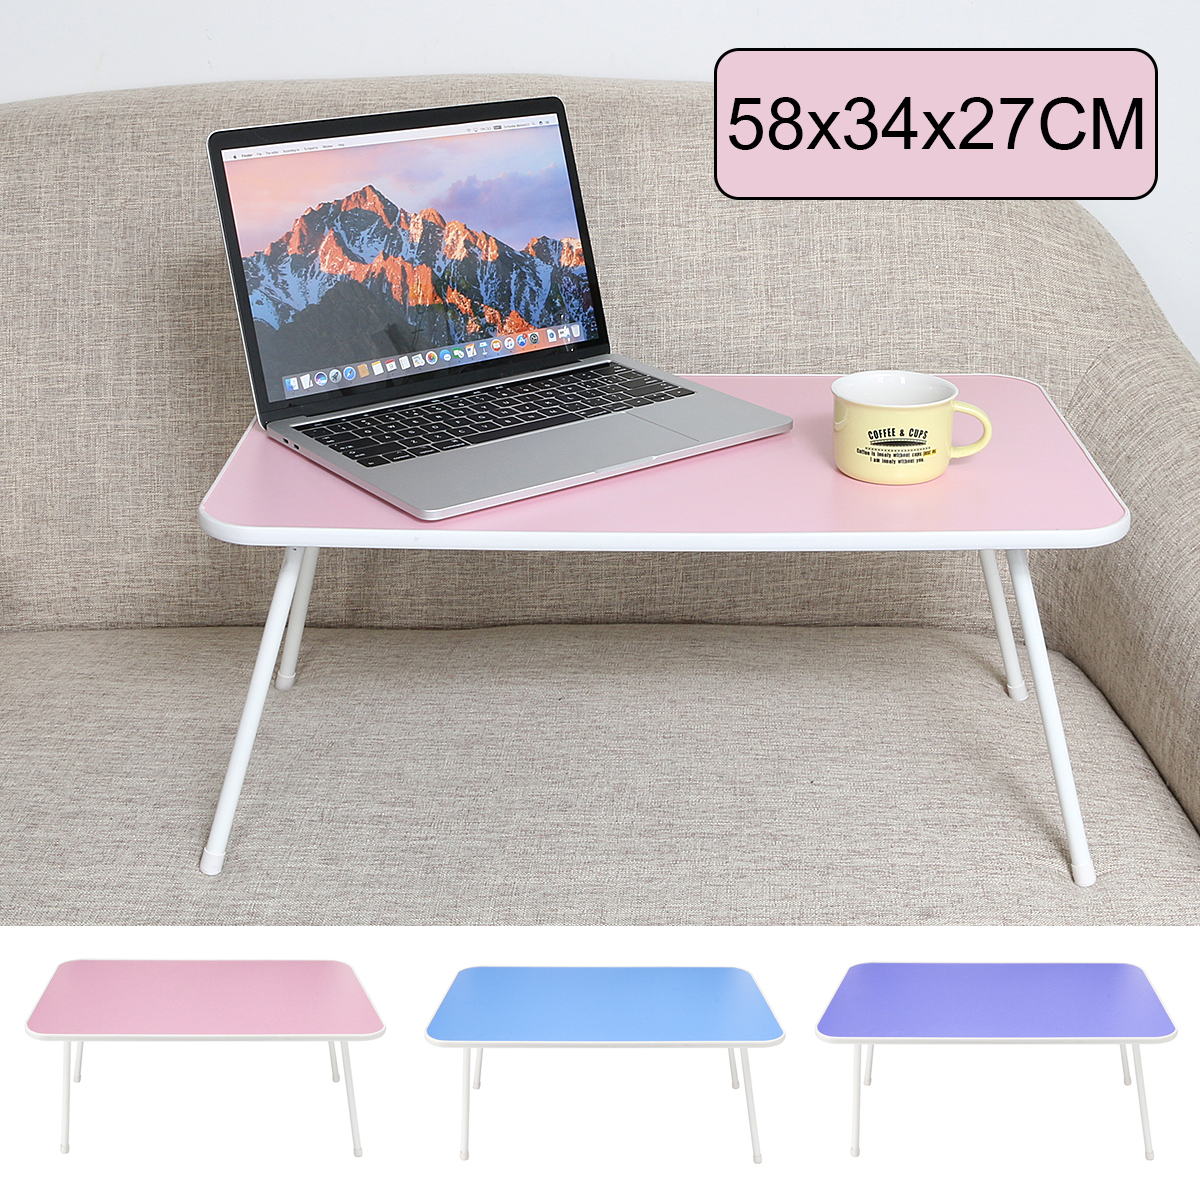 3 Colors Foldable Portable Lap Desk Laptop Table Computer Tray